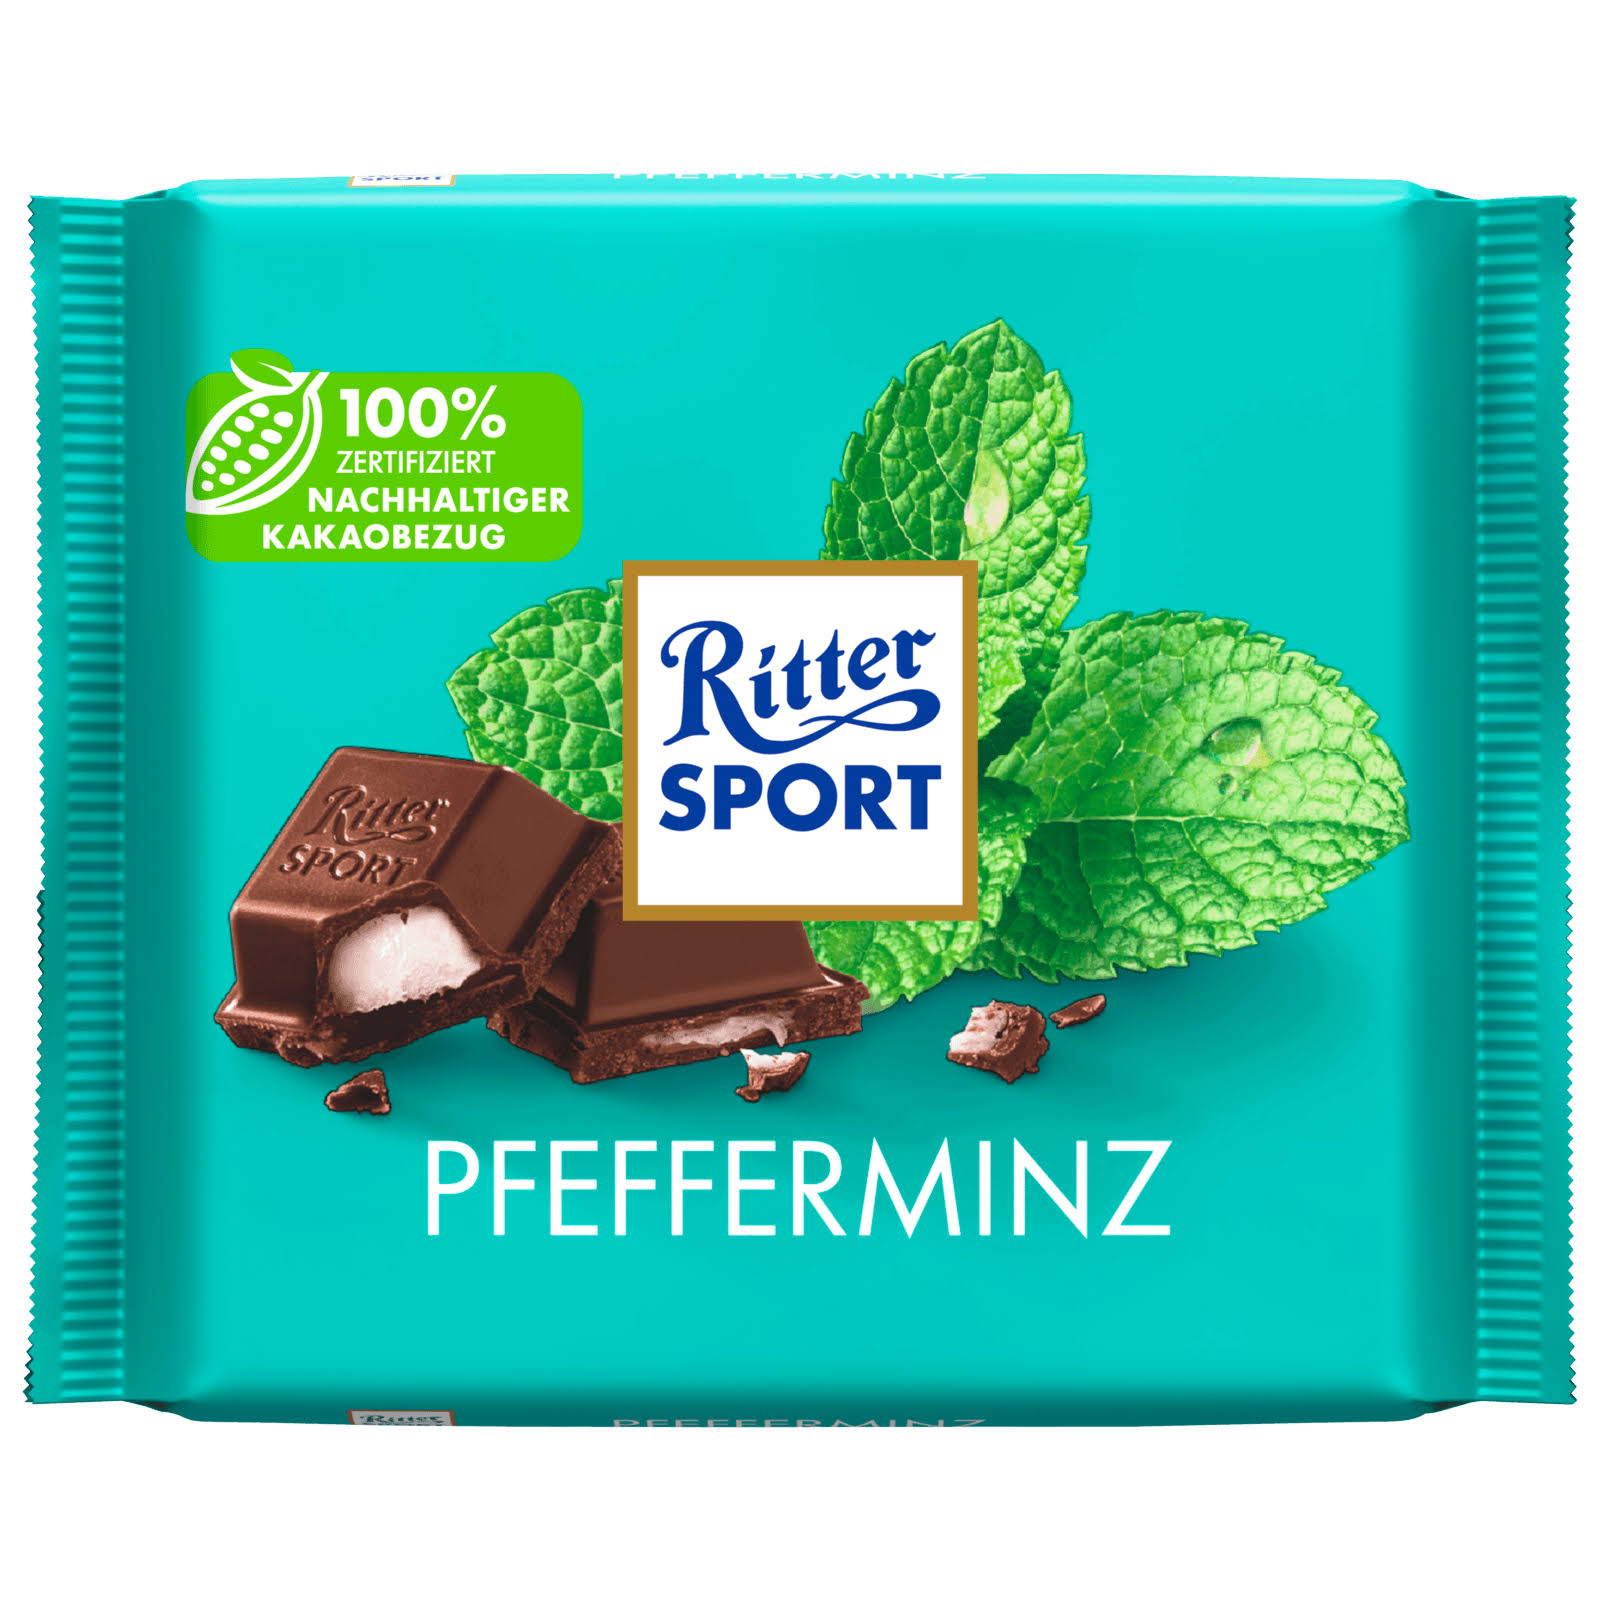 Ritter Sport Peppermint 3.53 oz